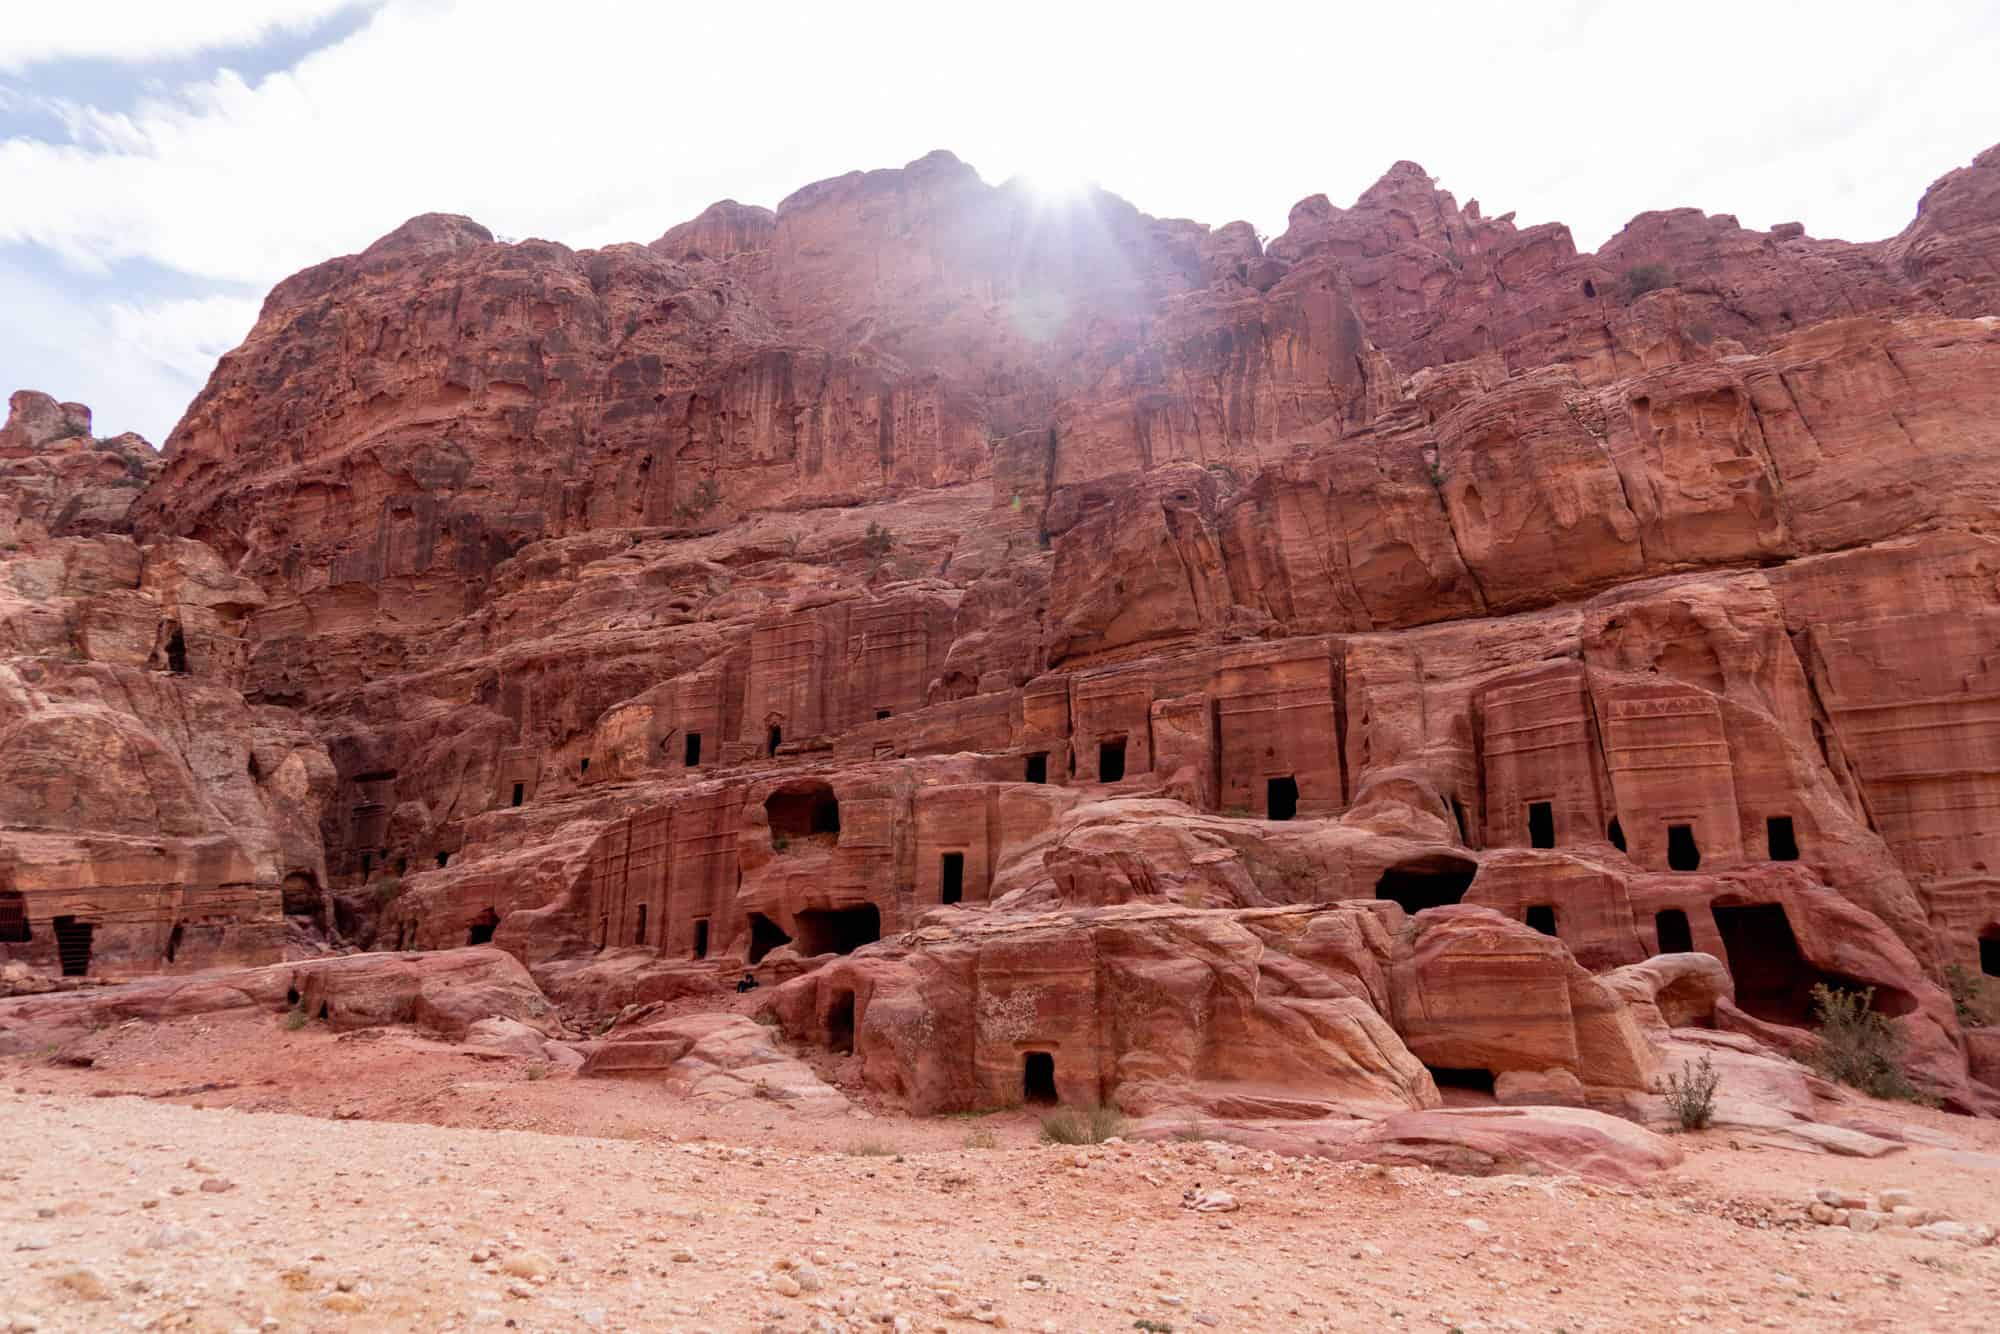 Jordan - Petra facts - hundreds of tombs